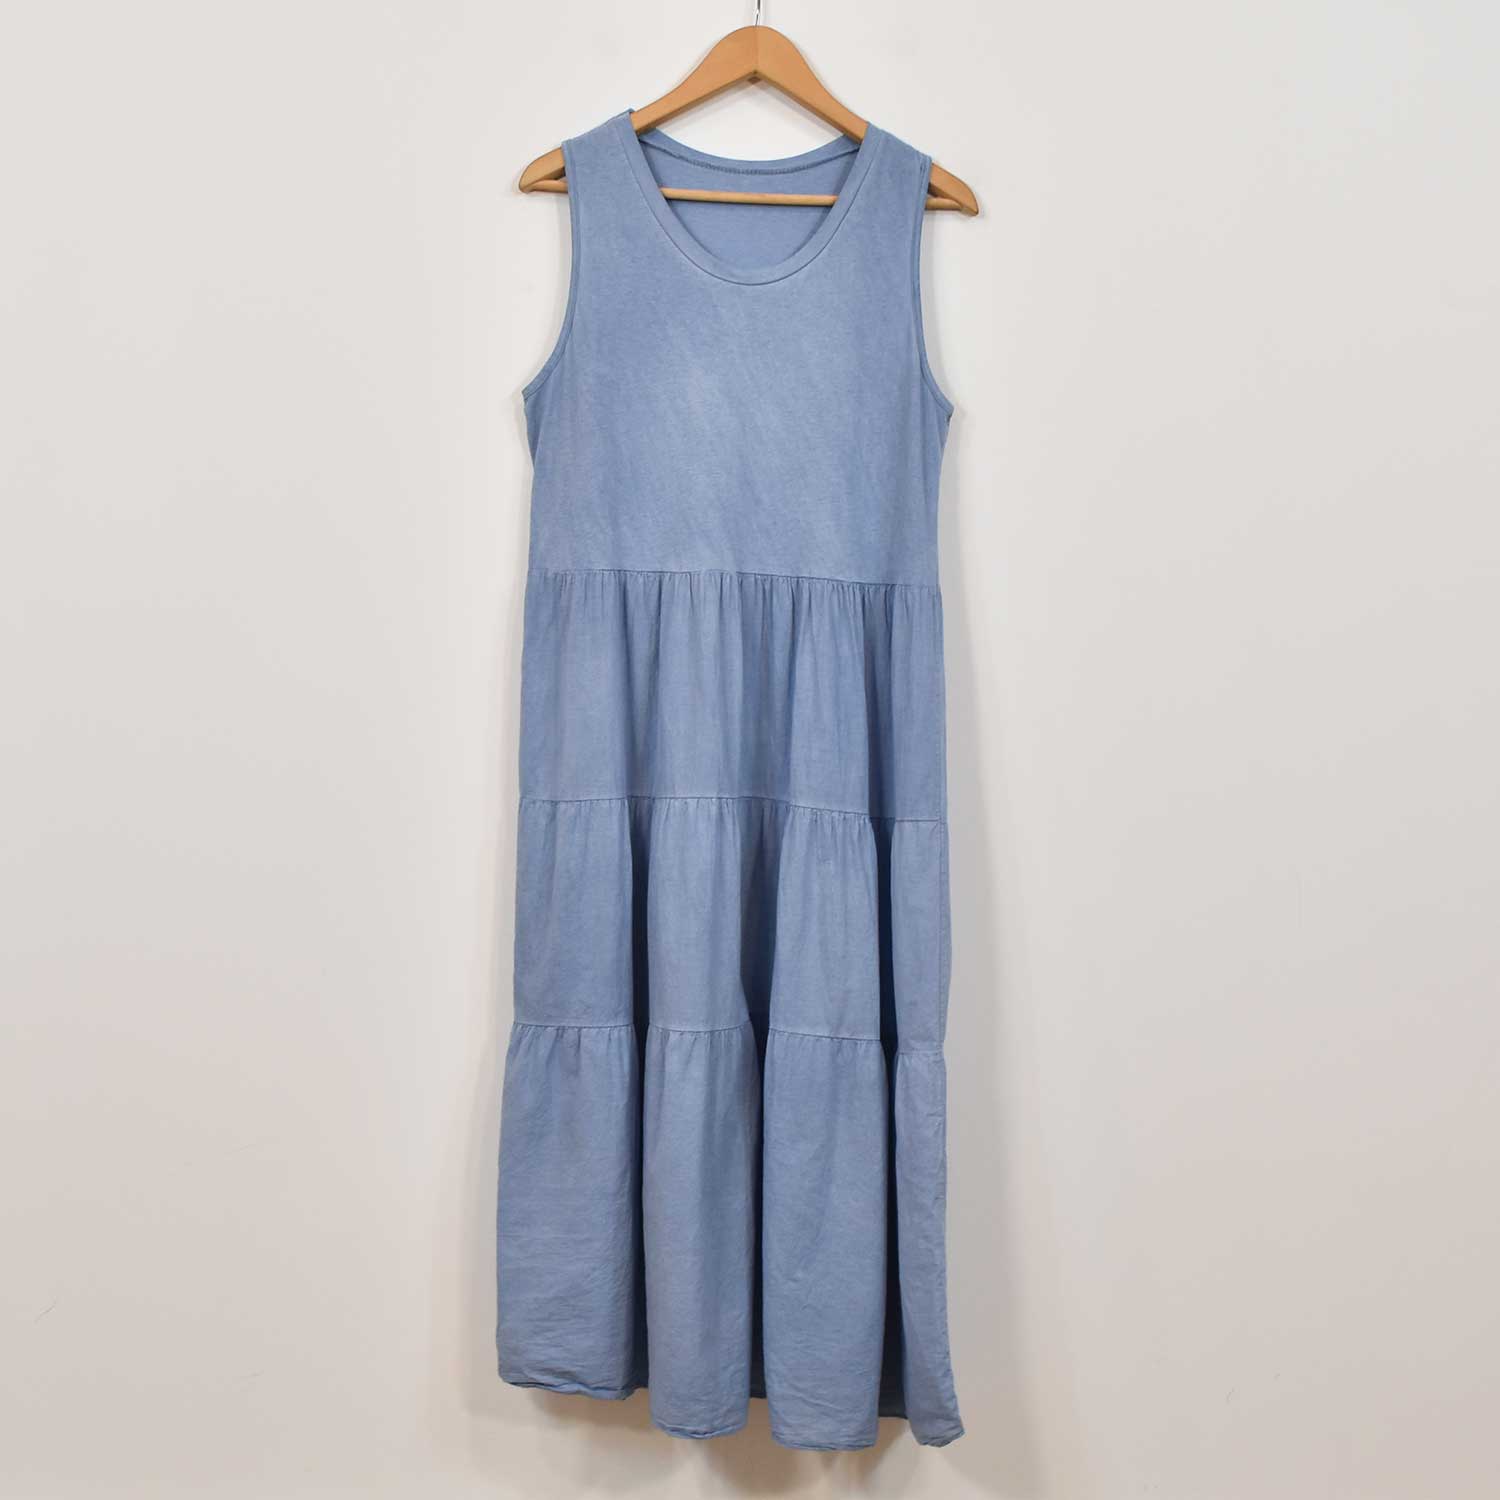 Blue stitching dress
